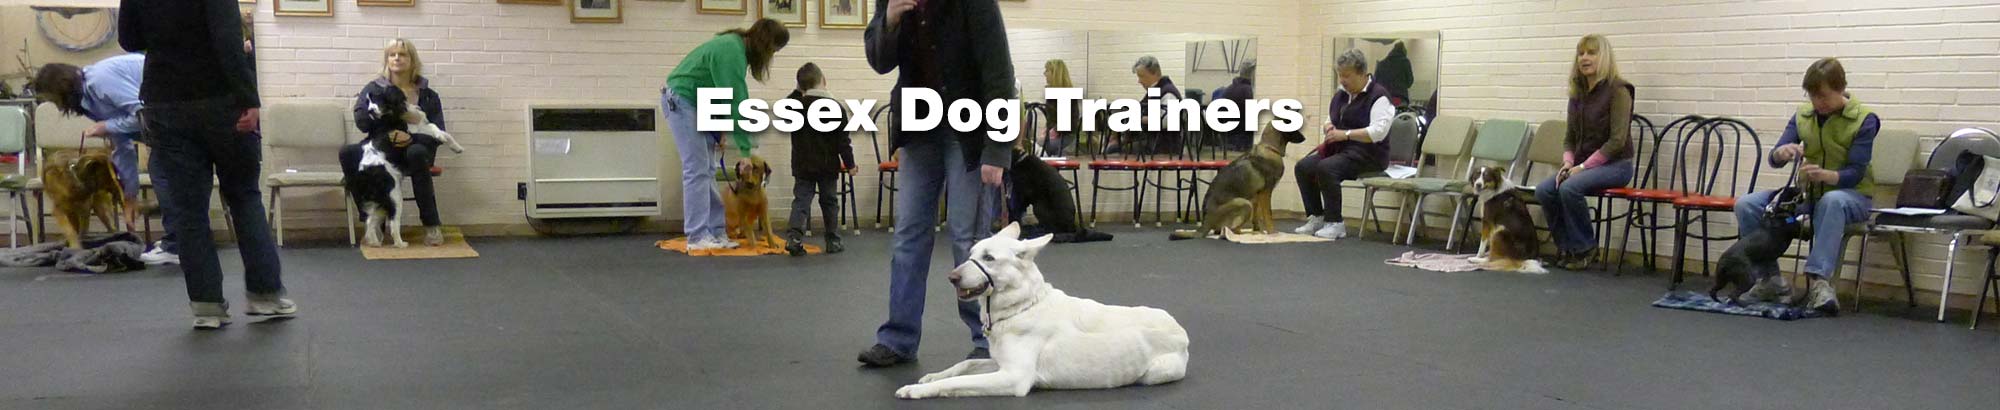 Choosing a Dog trainer in Essex